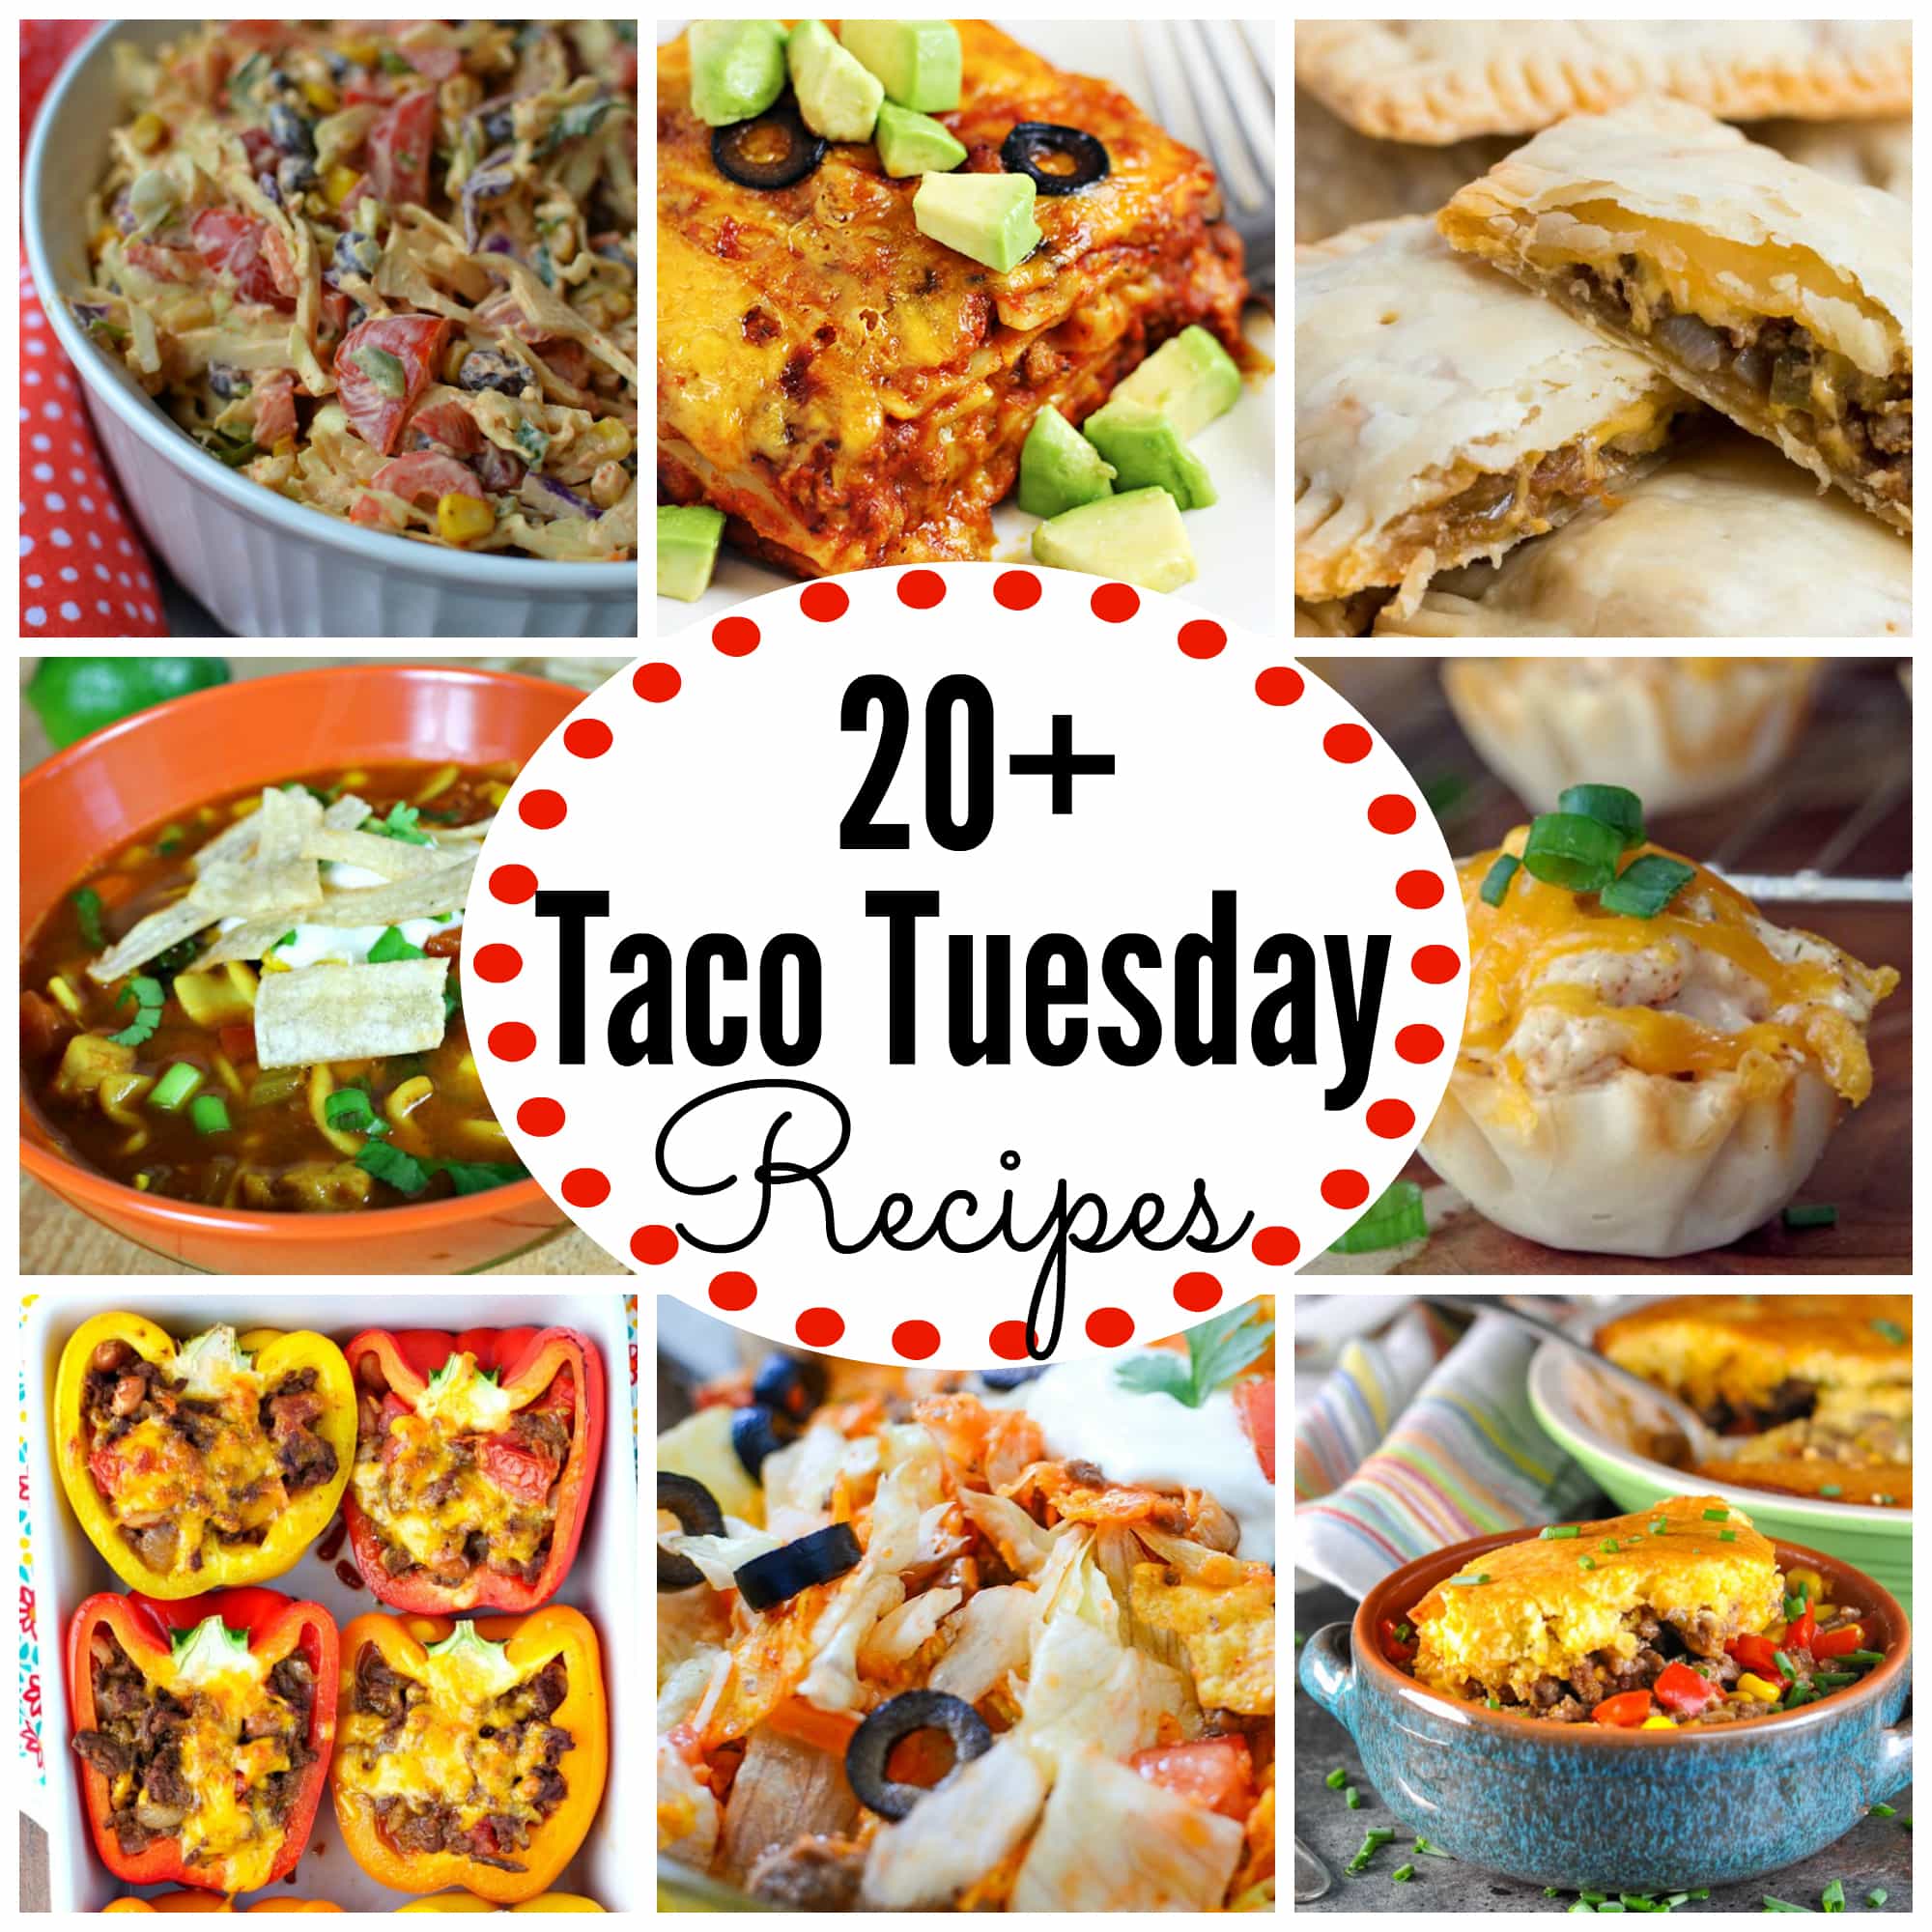 Taco Tuesday Recipes no tacos